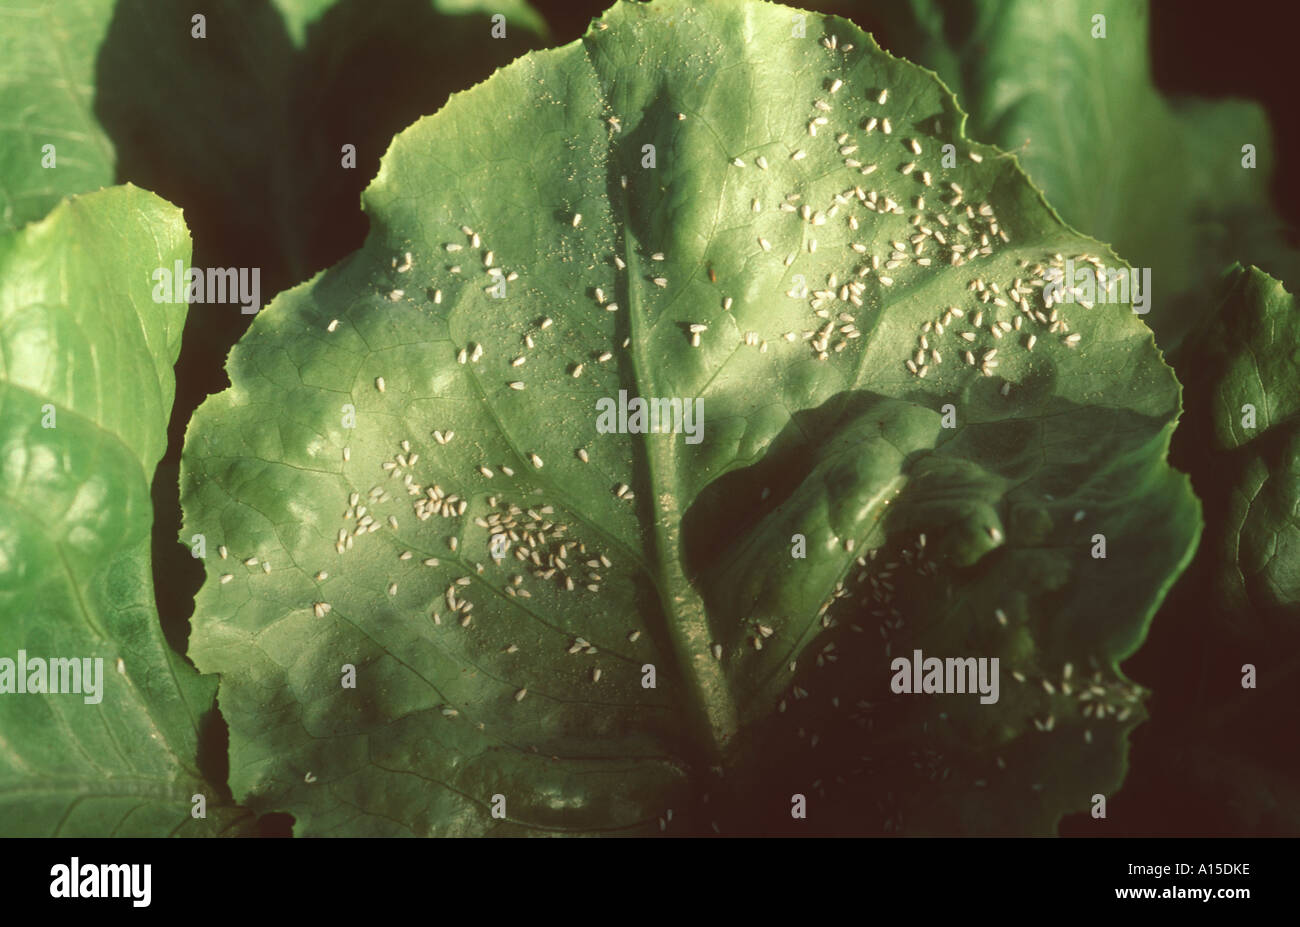 Glasshouse whitefly Trialeurodes vaporariorum infestation on lettuce leaves Stock Photo